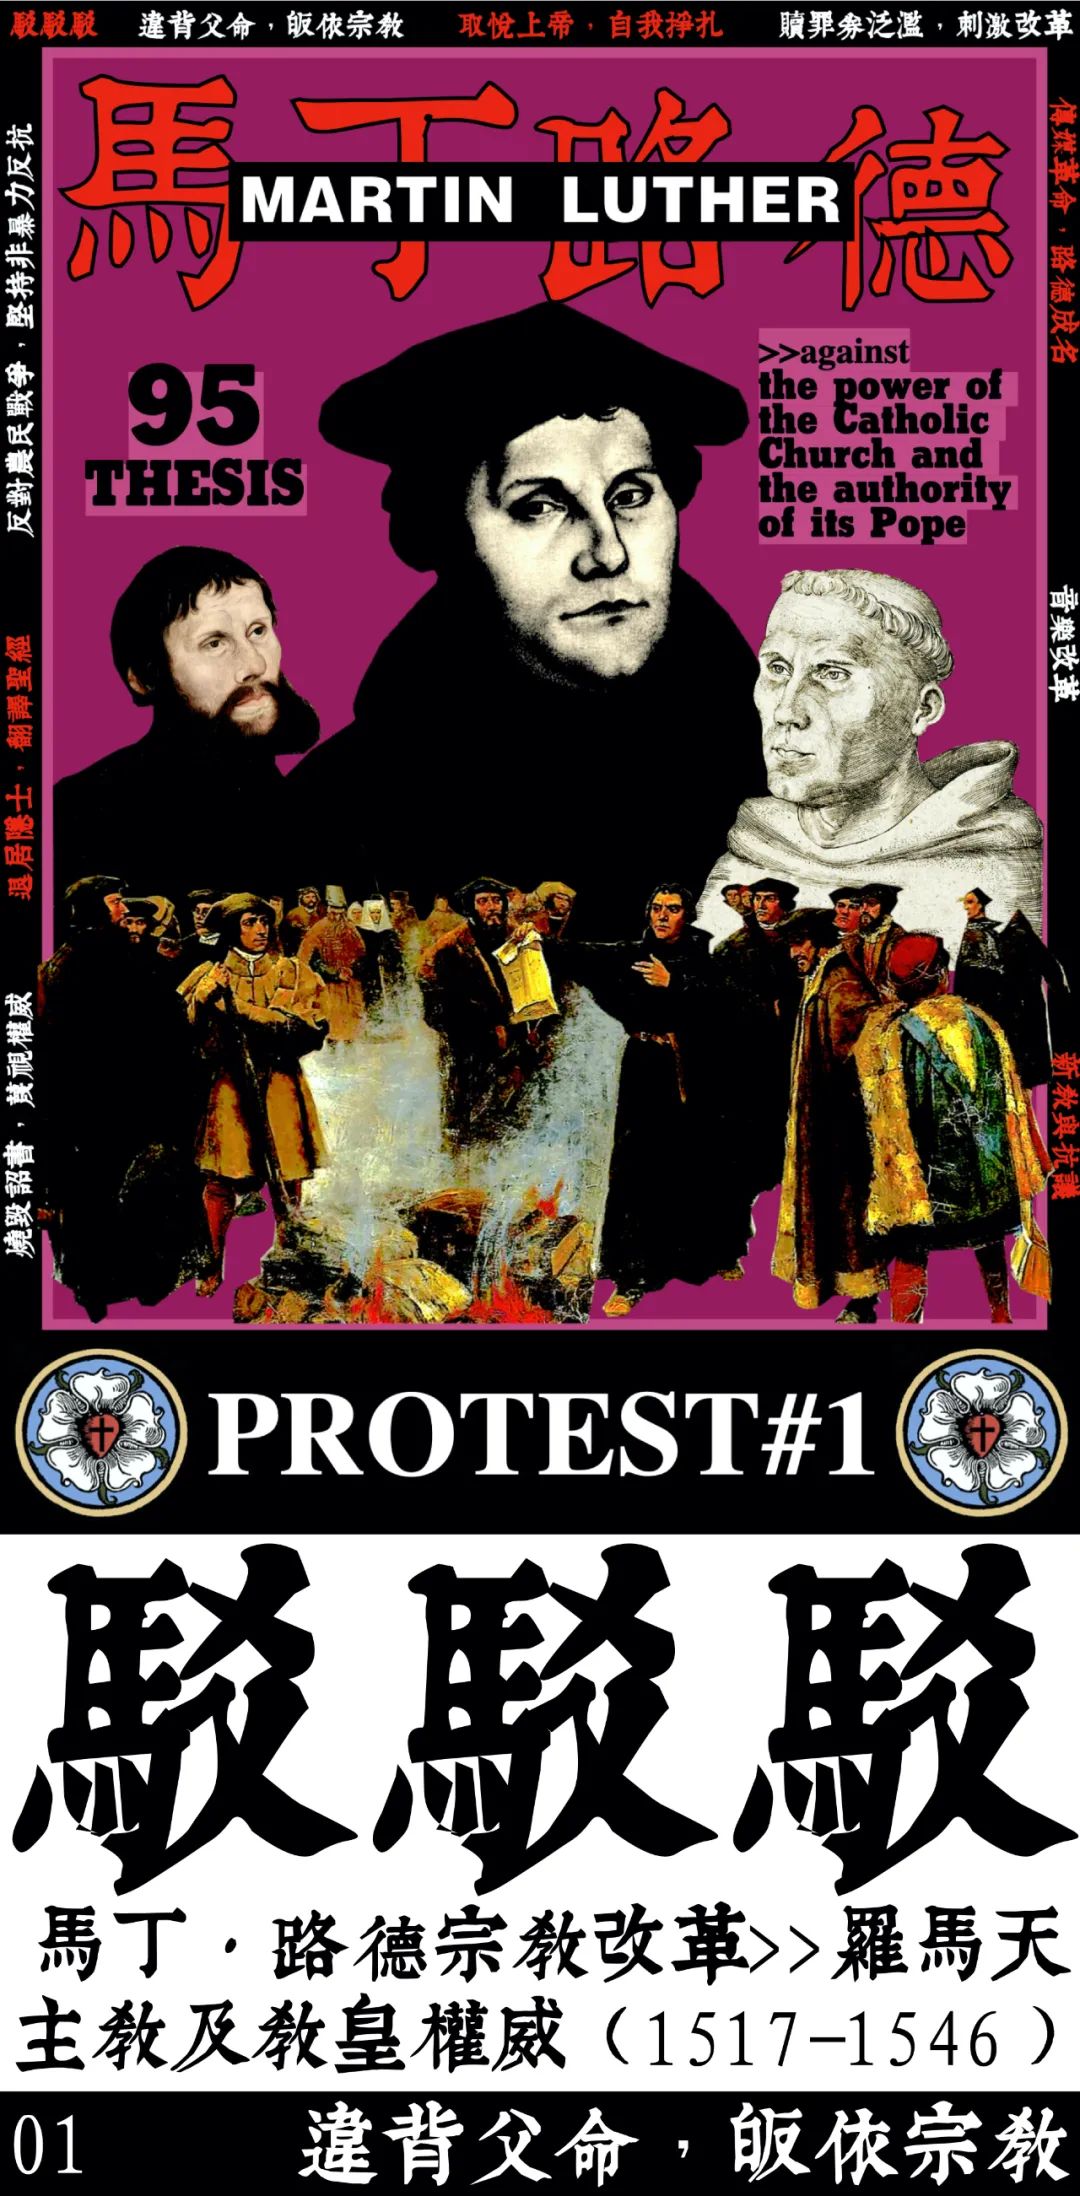 PROTEST#1 马丁·路德宗教改革>>罗马天主教及教皇权威（1517